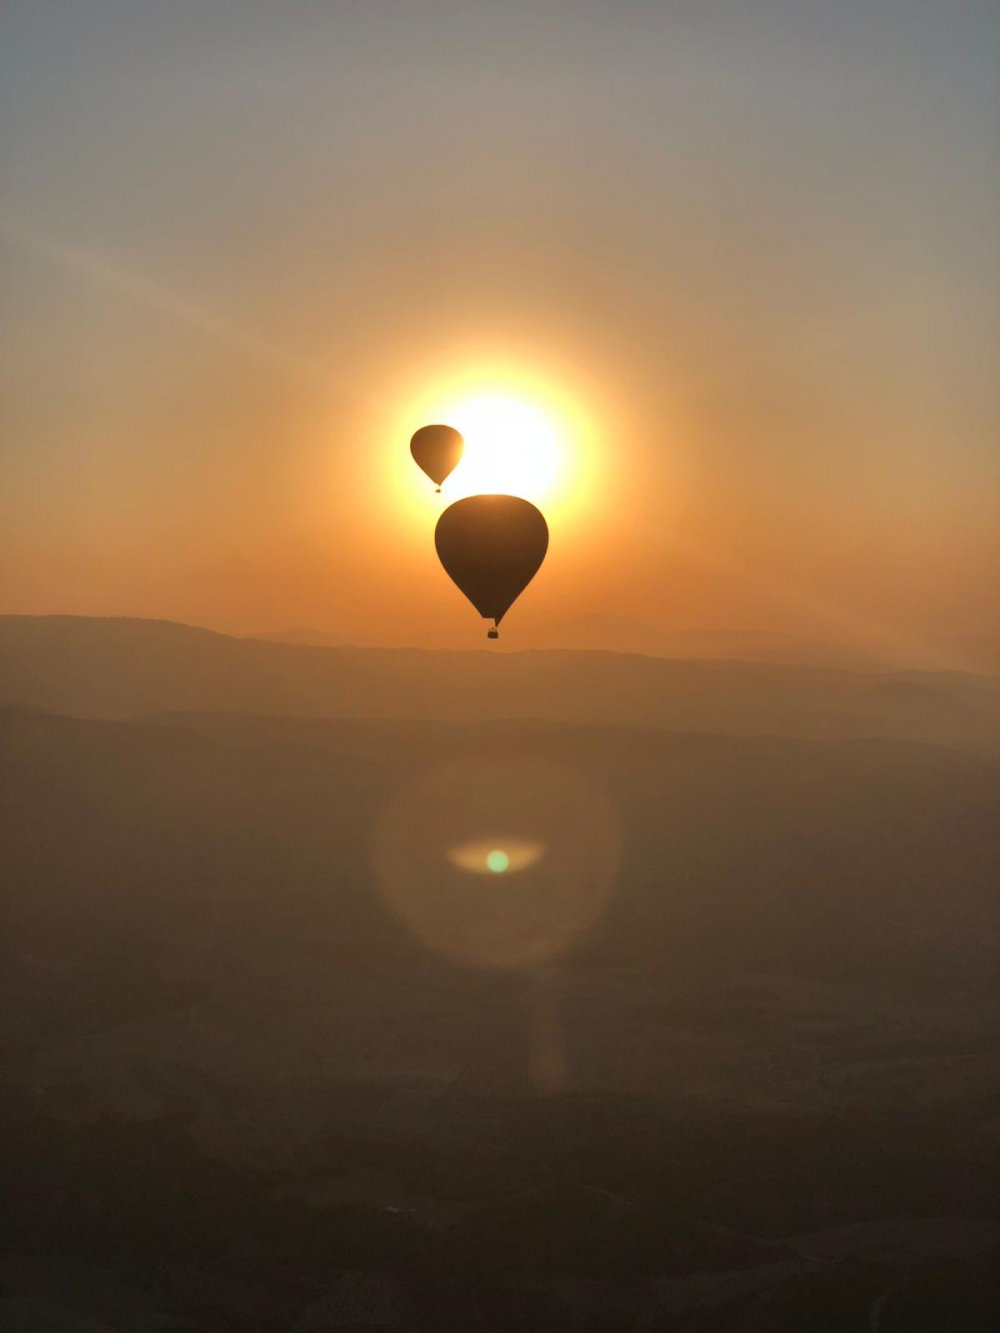 Denizli’de UNESCO Dünya Mirası Listesi’ndeki beyaz cennet Pamukkale’de yapılan balon turları turistlerin ilgisini çekti. Kentin en önemli turizm noktası olan, yerli ve yabancı milyonlarca kişiyi ağırlayan Pamukkale’de 3 olan balon sayısı 13’e yükseldi. 20 bin kişinin balonla uçtuğu Pamukkale’deki balon sayısının Aralık ayına kadar 20’ye yükselmesi bekleniyor. 